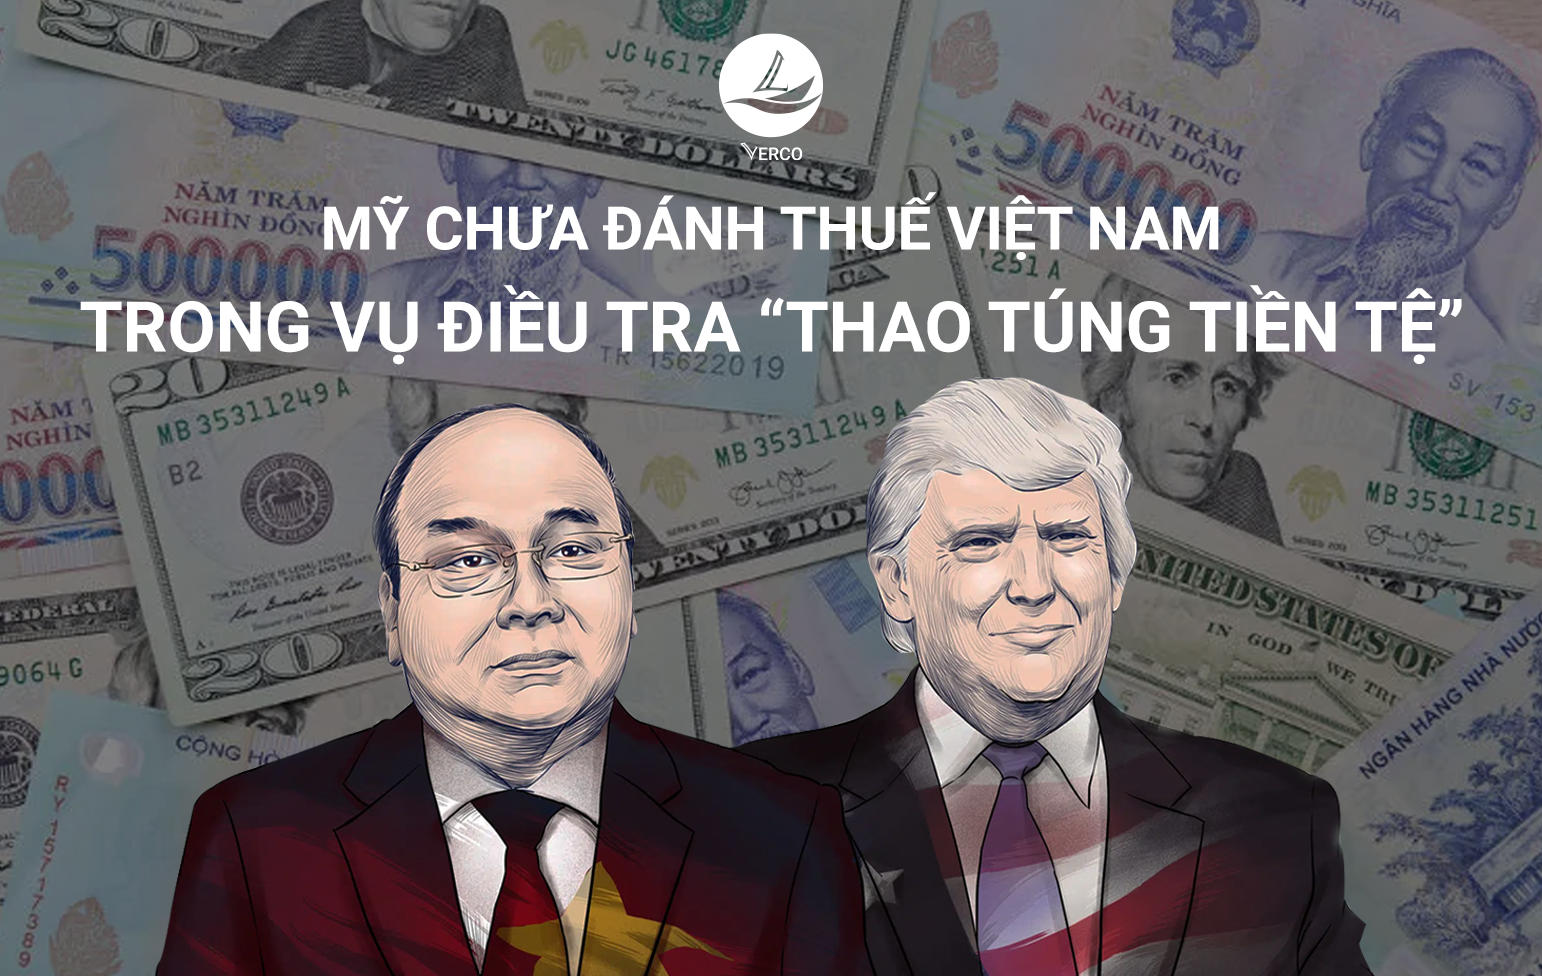 Mỹ chưa đánh thuế Việt Nam trong vụ điều tra “thao túng tiền tệ”